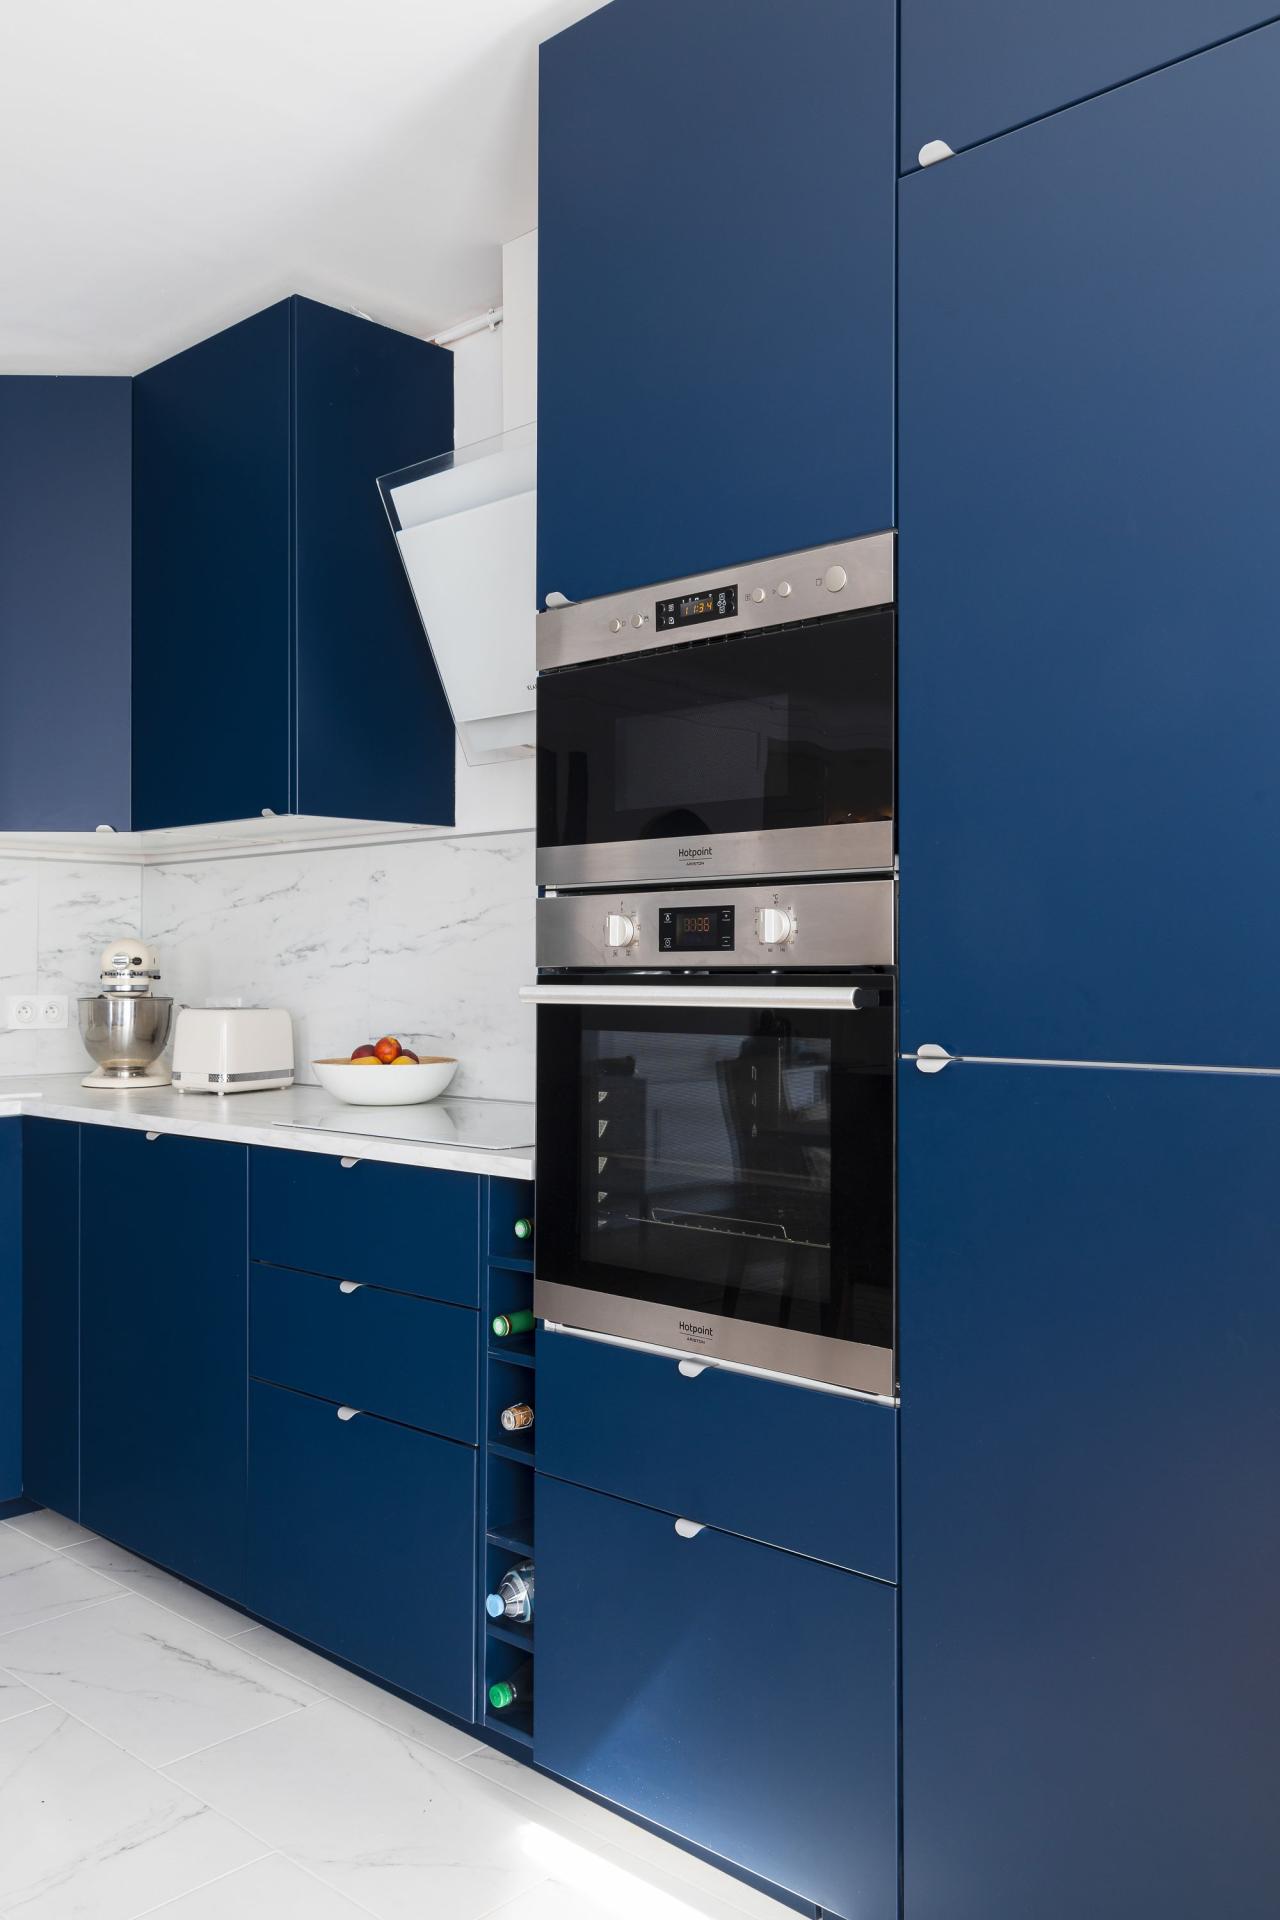 Detailliertes Budget - Eine Küche in Blau 02 - Bleu nuit von Wherdeco